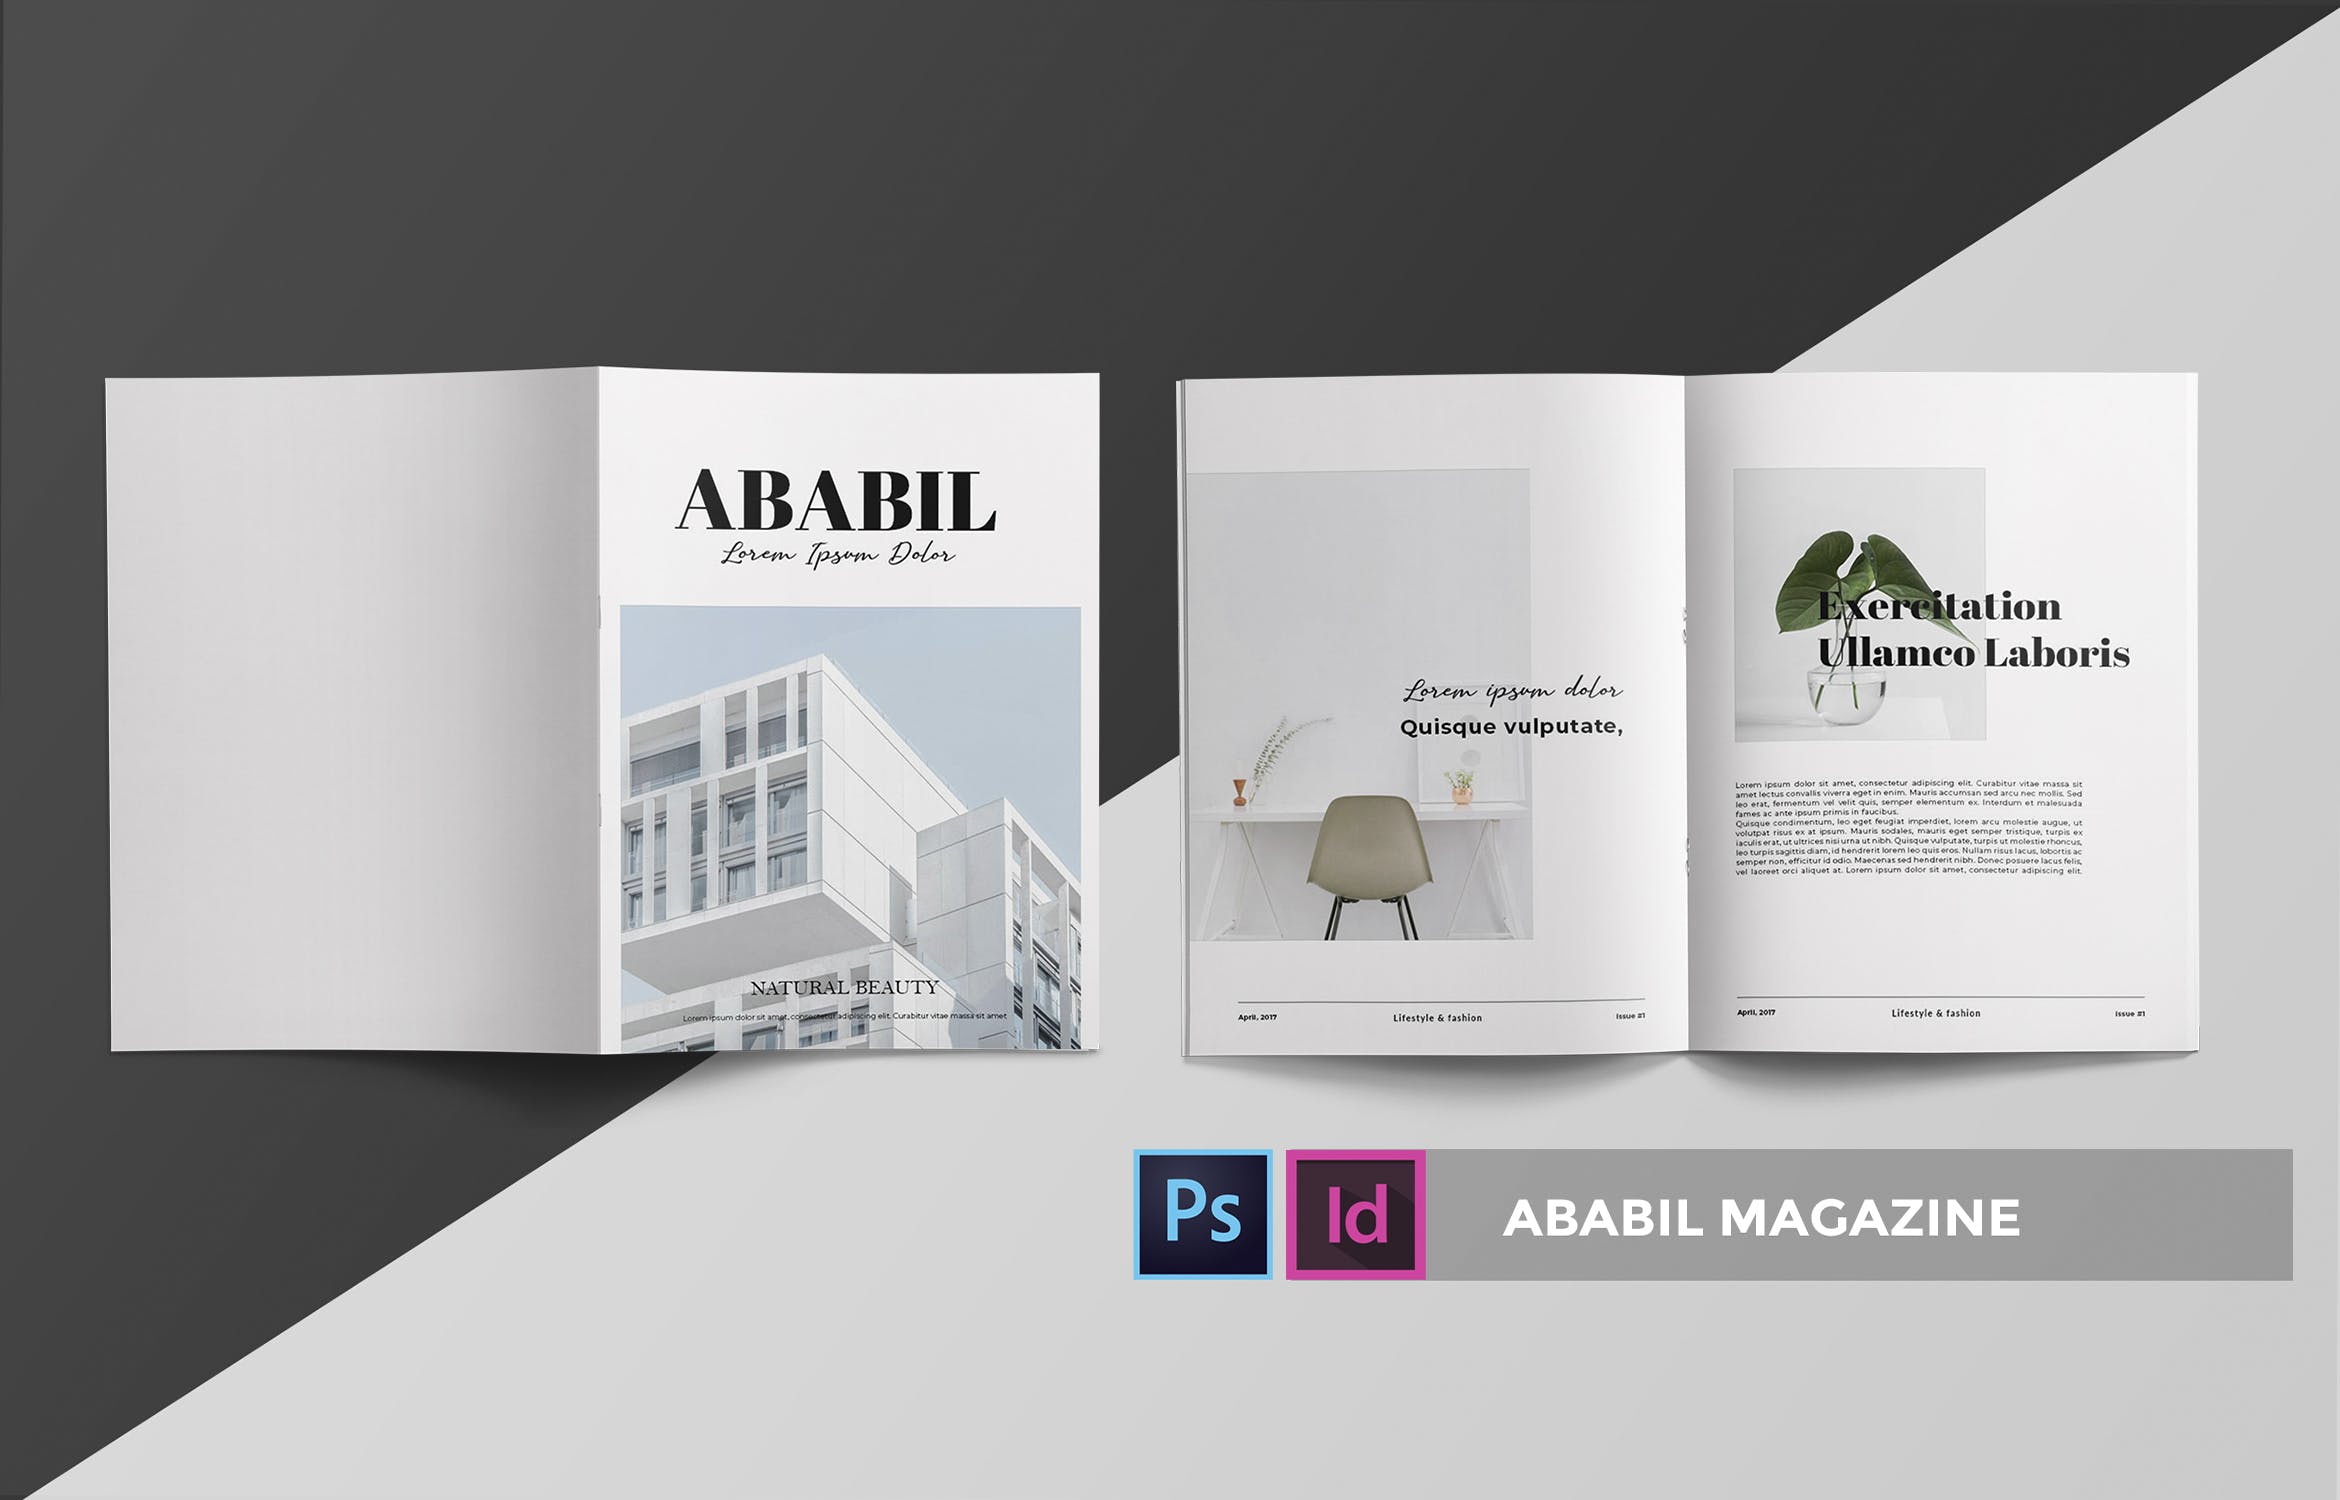 高端建筑/设计/房地产主题16图库精选杂志排版设计INDD模板 ABABIL | Magazine Template插图(2)